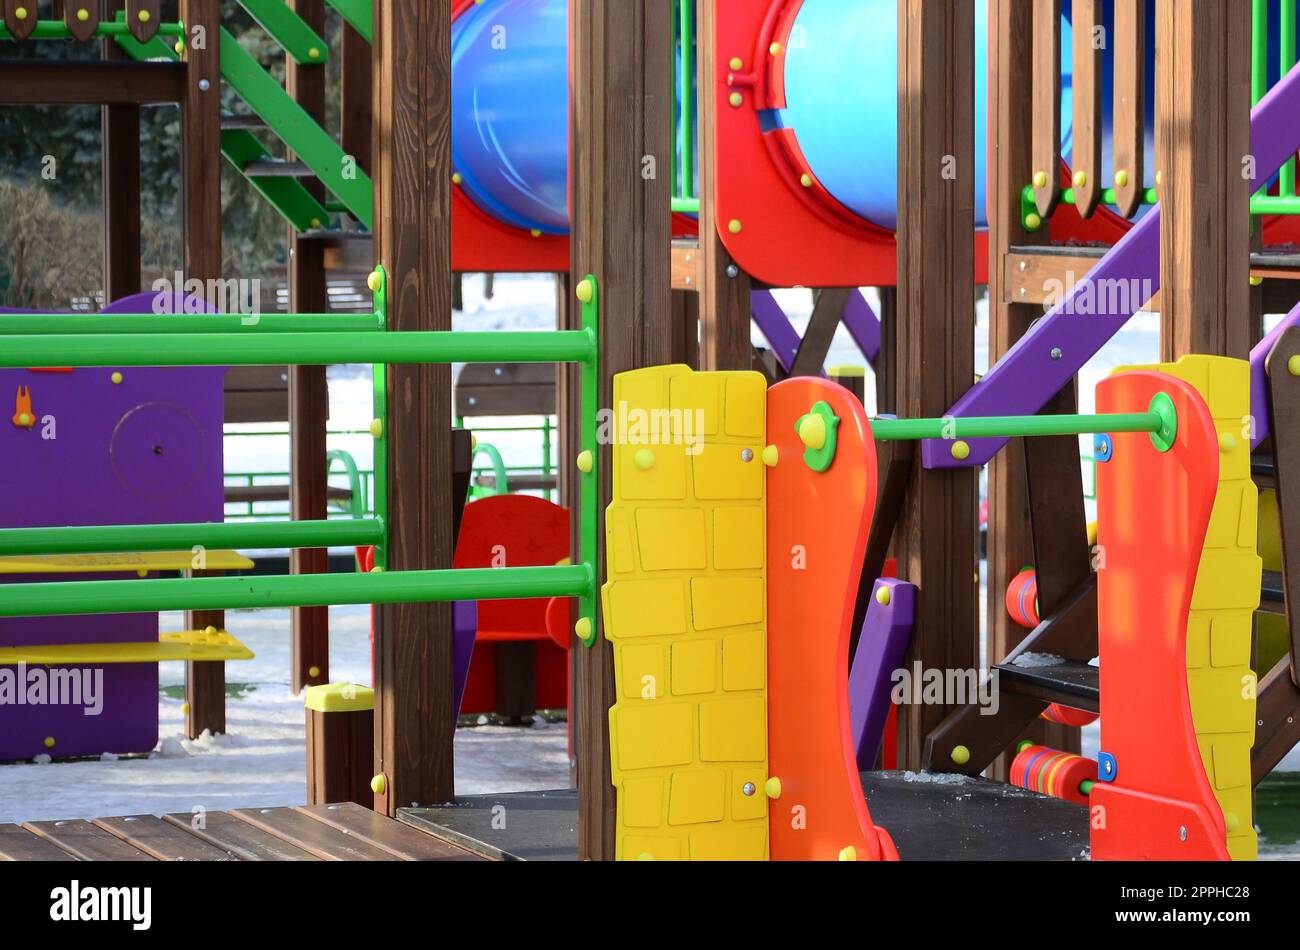 Frammento di un parco giochi in plastica e legno, dipinto in diversi colori Foto Stock